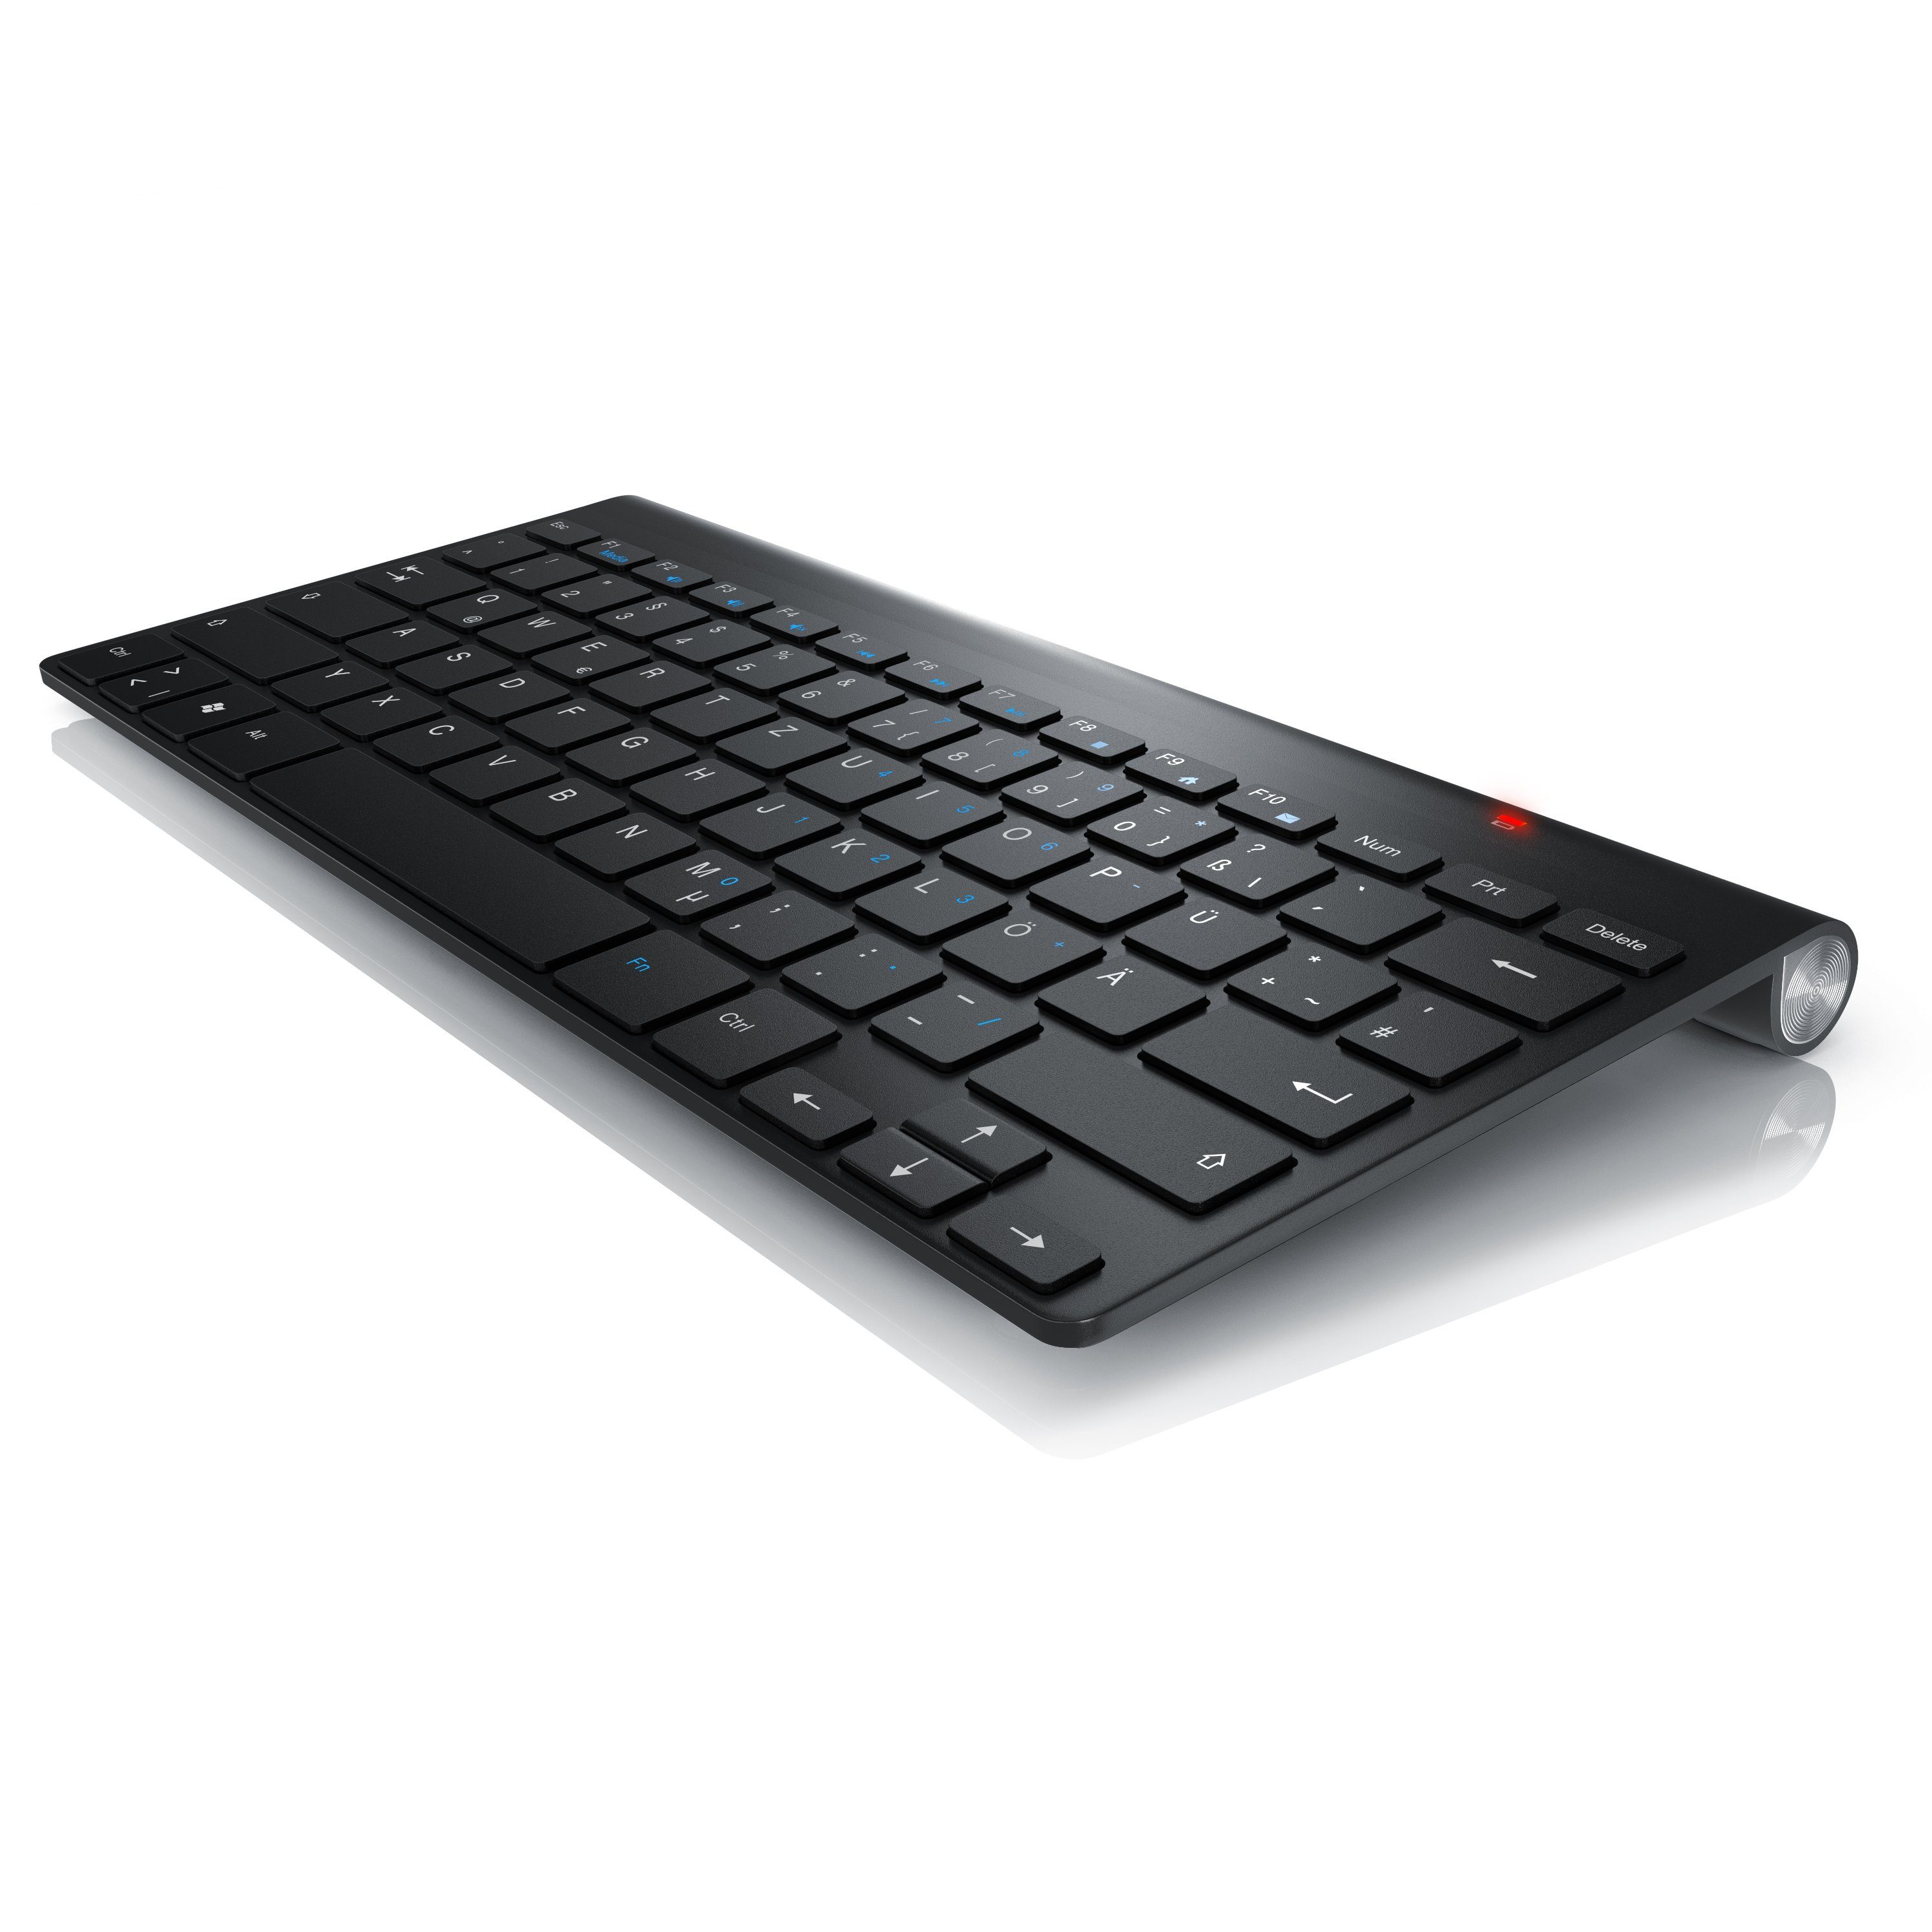 2,4GHz, Keyboard Aplic (kabelloses Layout) Wireless-Tastatur Tastaturlayout, Slim Windows QWERTZ